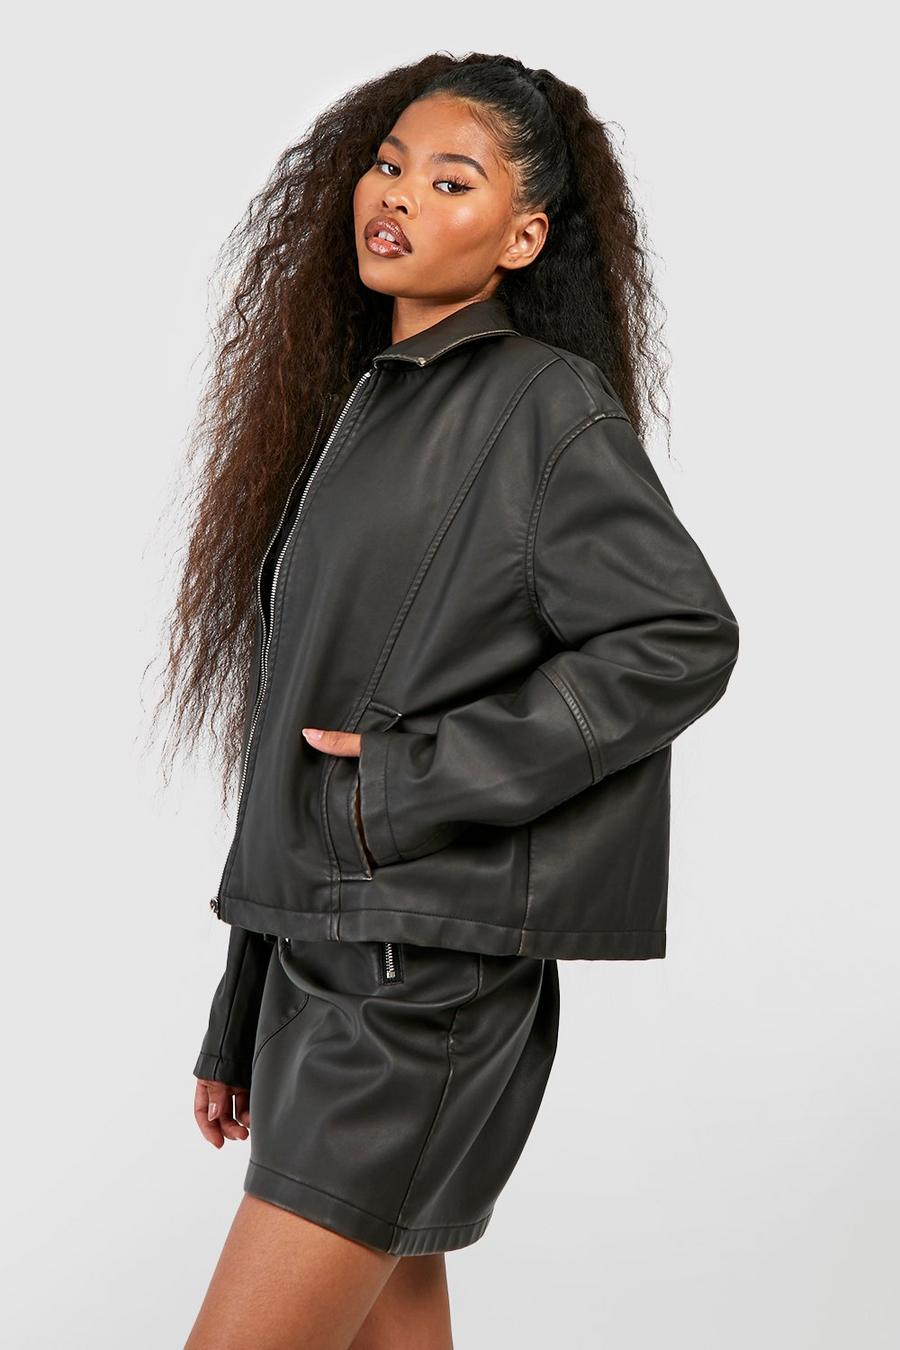 Black noir Vintage Look Faux Leather Zip Jacket